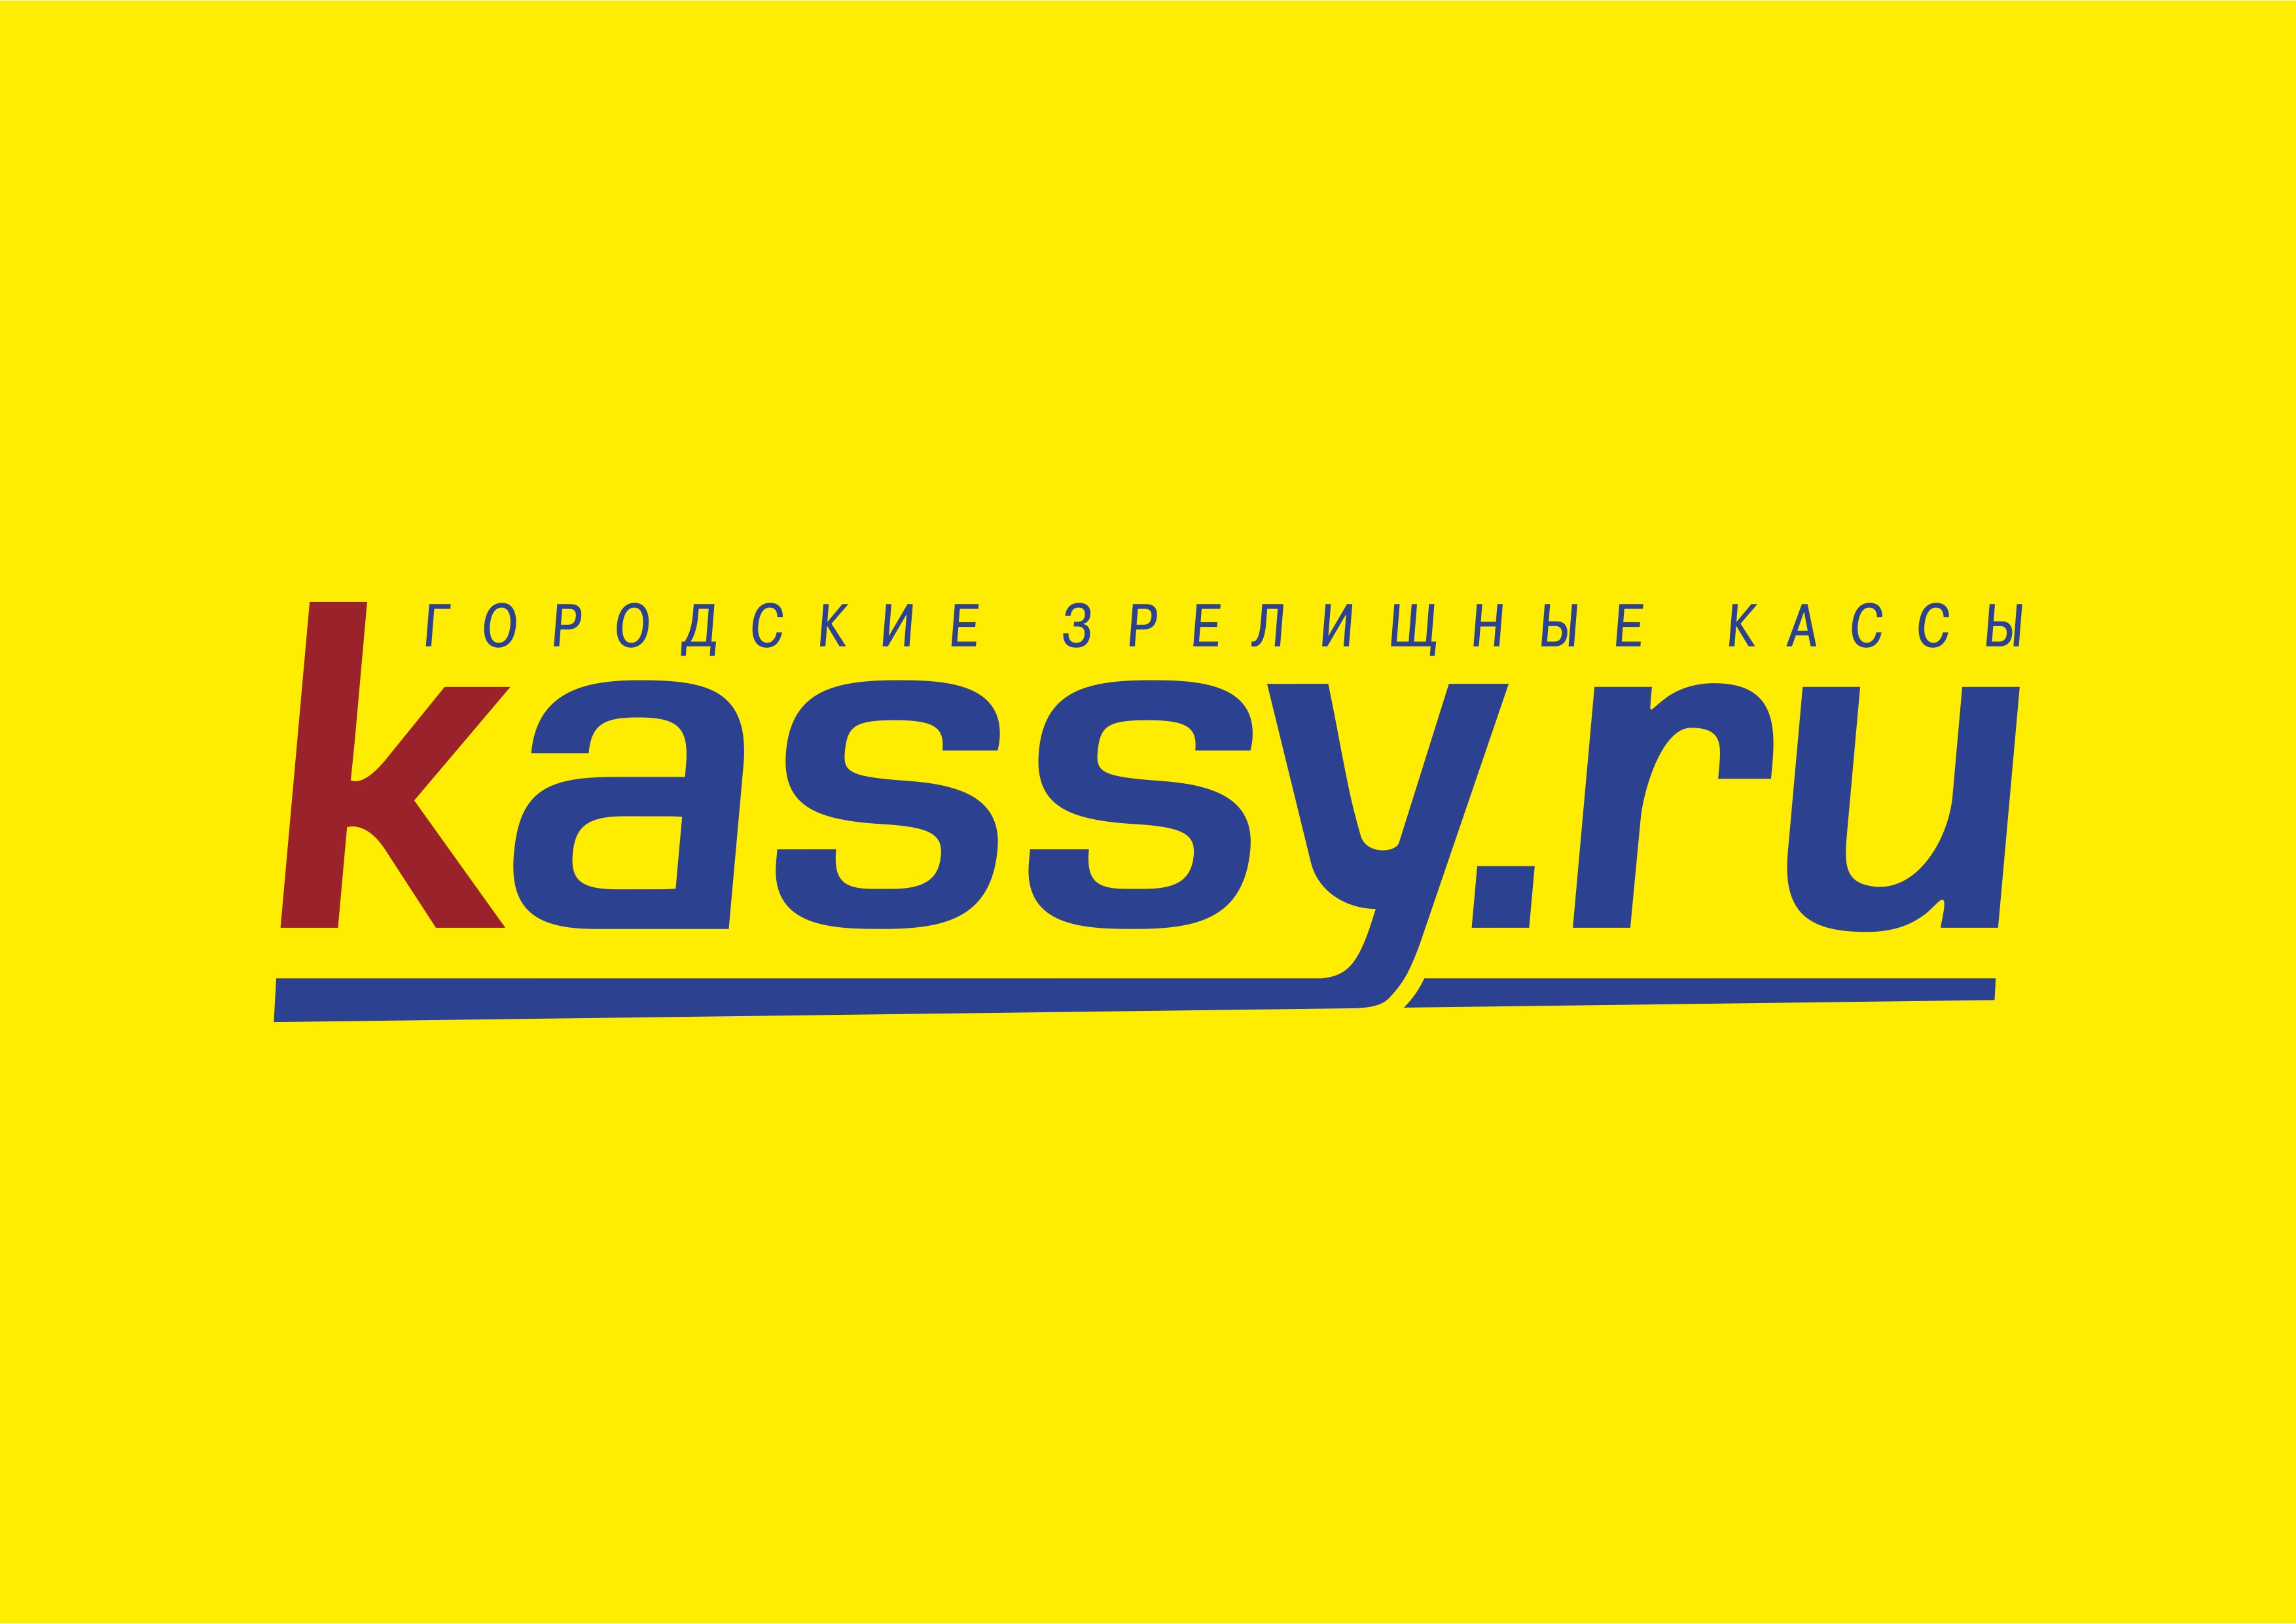 Кассы ру калининград. Кассы ру. Кассы ру лого. Kassy.ru логотип. Городские зрелищные кассы логотип.